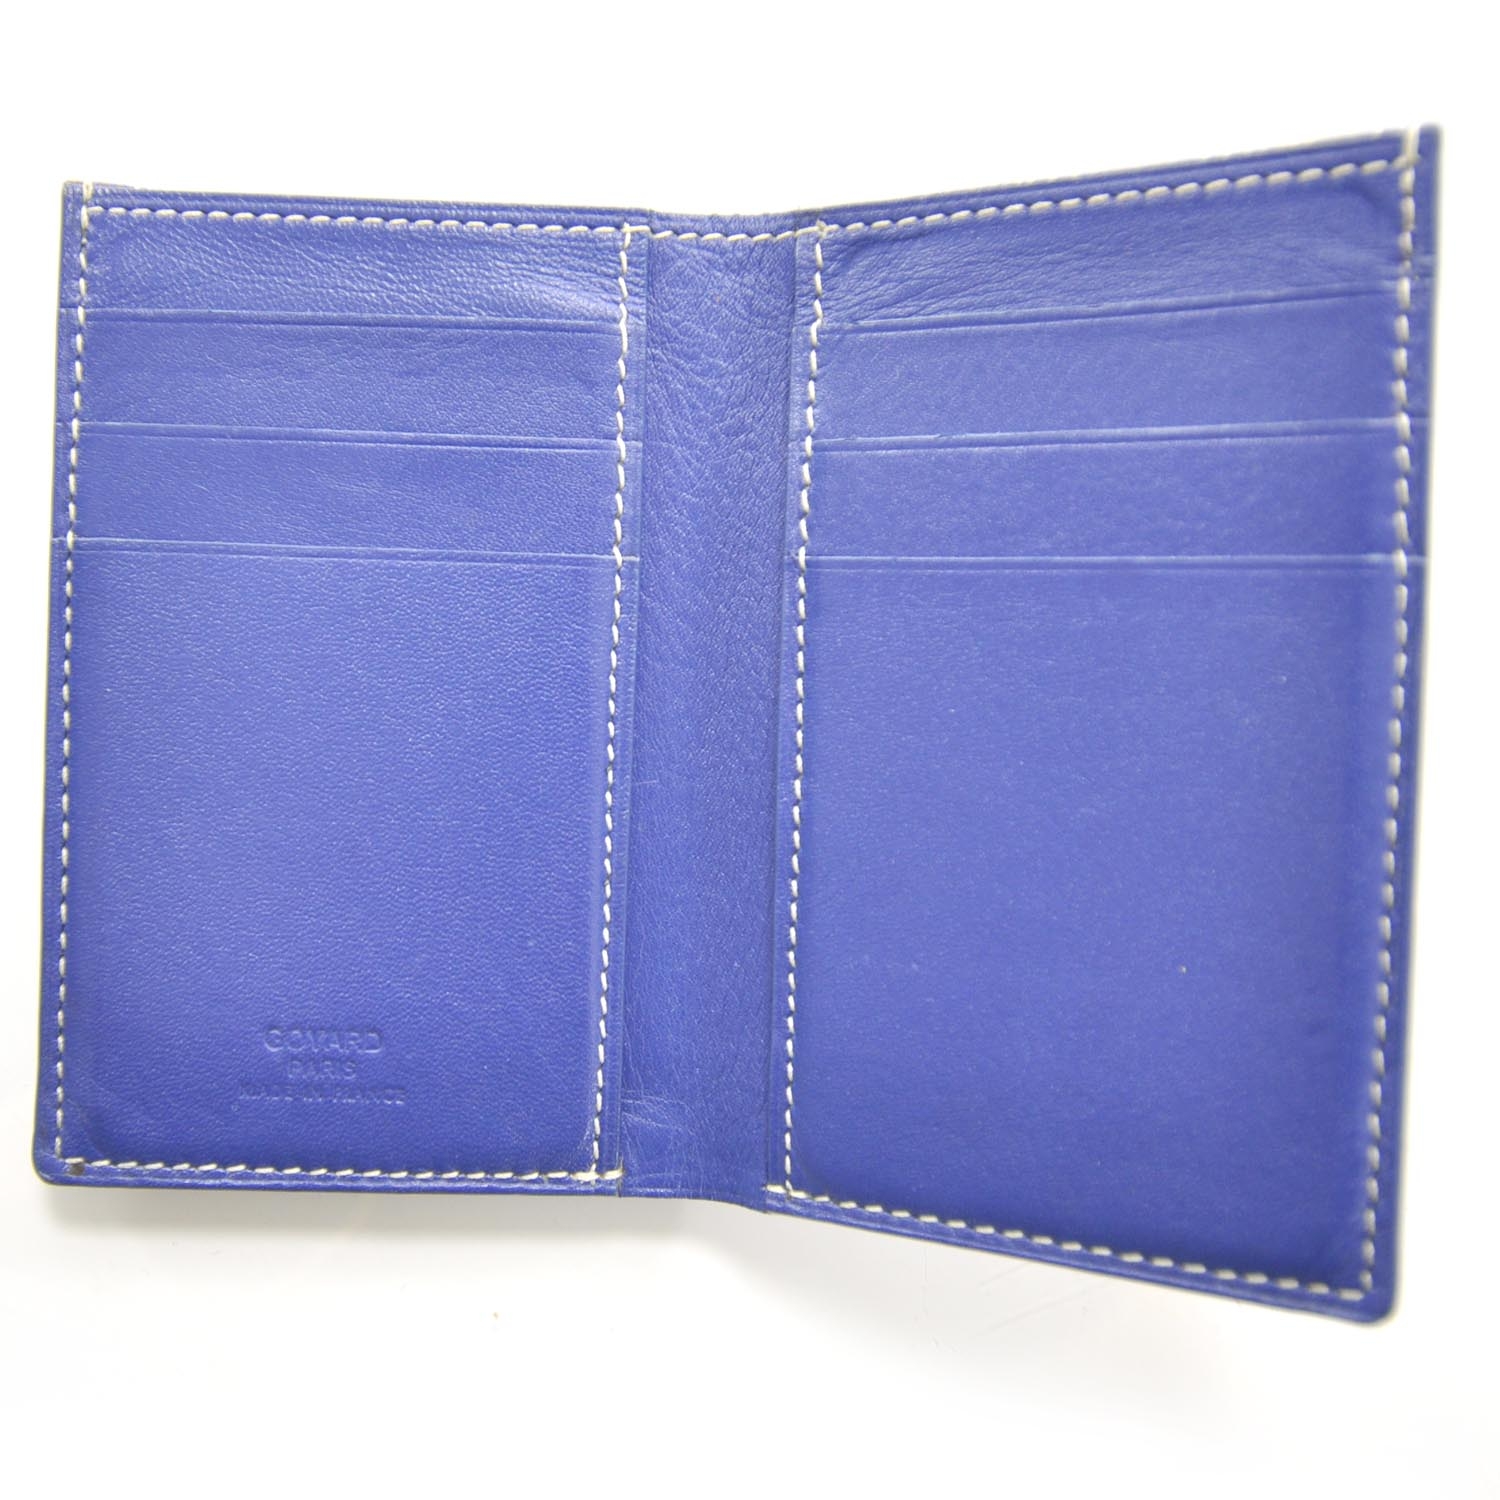 GOYARD Goyardine Card Holder Case Blue 28030